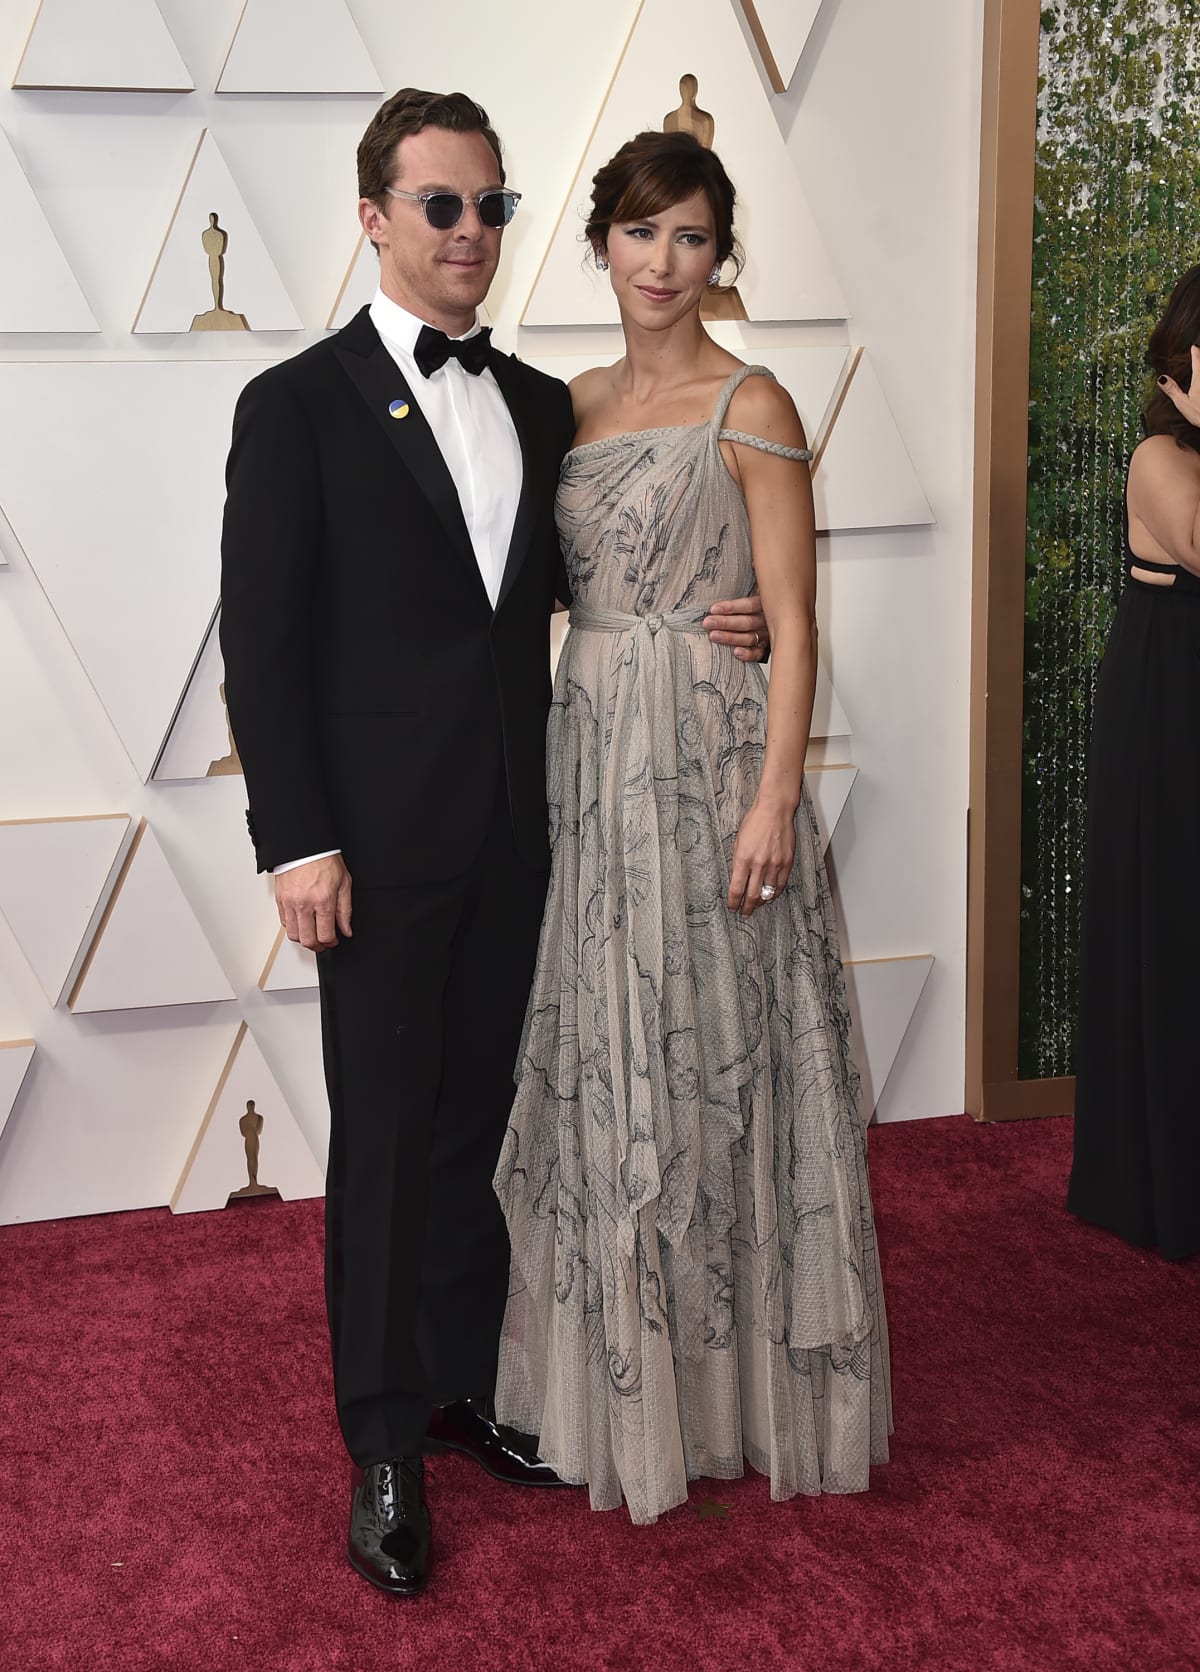 Na předávání prestižních cen dorazil také herec Benedict Cumberbatch s manželkou Sophii Hunterovou. Na klopě saka měl připevněný odznáček s ukrajinskou vlajkou. Vyjádřil tím podporu Ukrajině.  